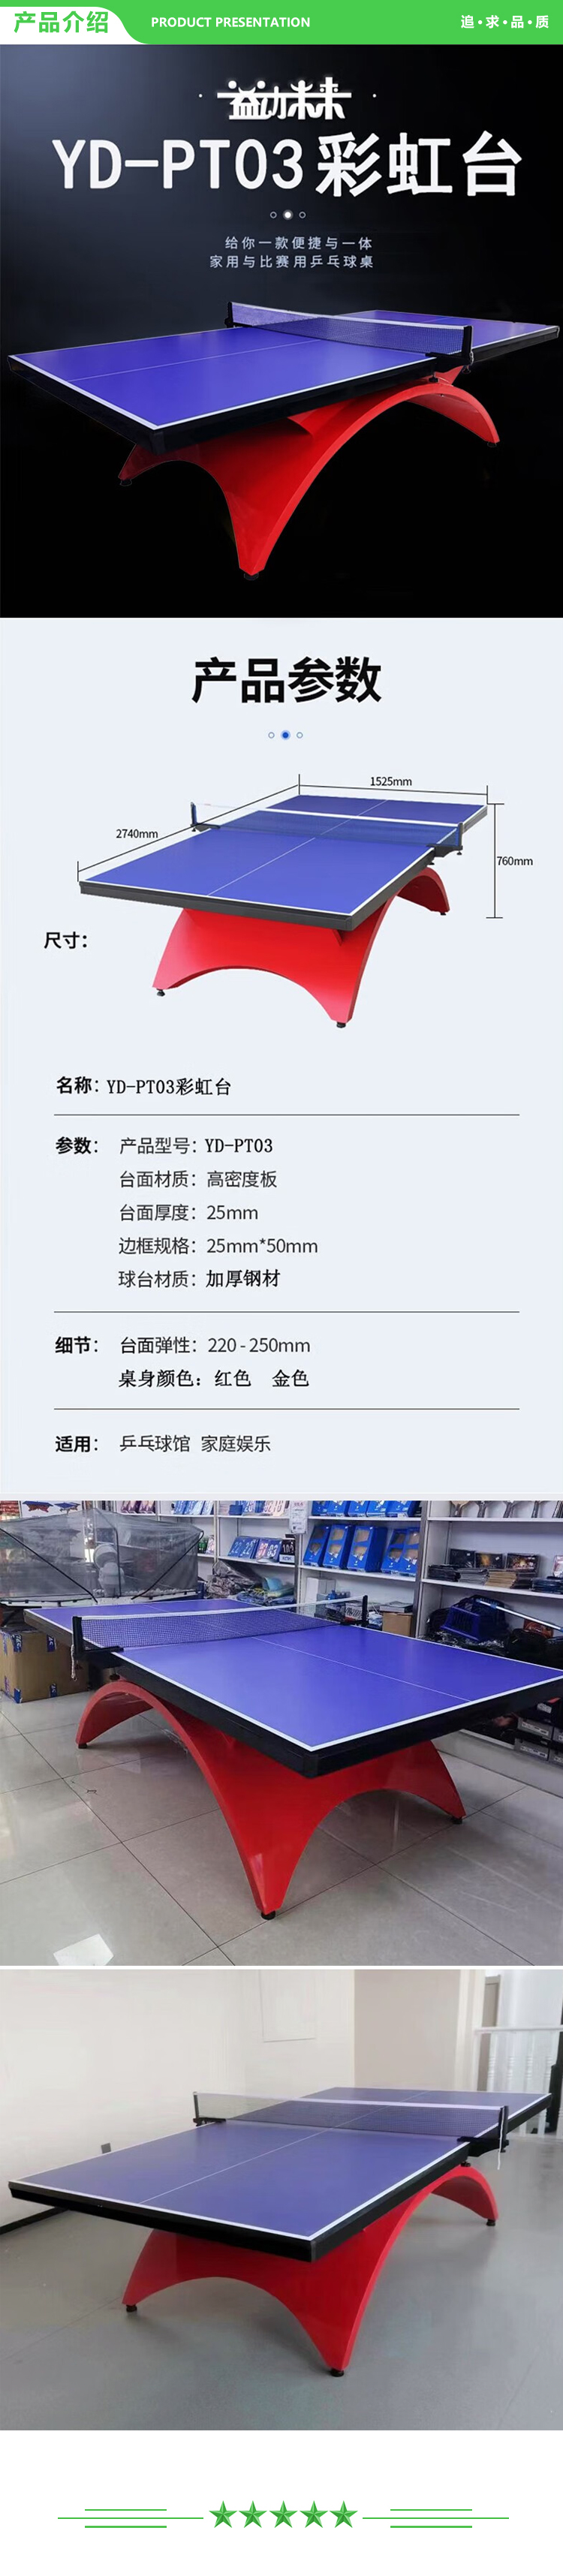 益动未来 YD-pt03 彩虹乒乓球台 豪华室内标准比赛用乒乓球案子 2.jpg